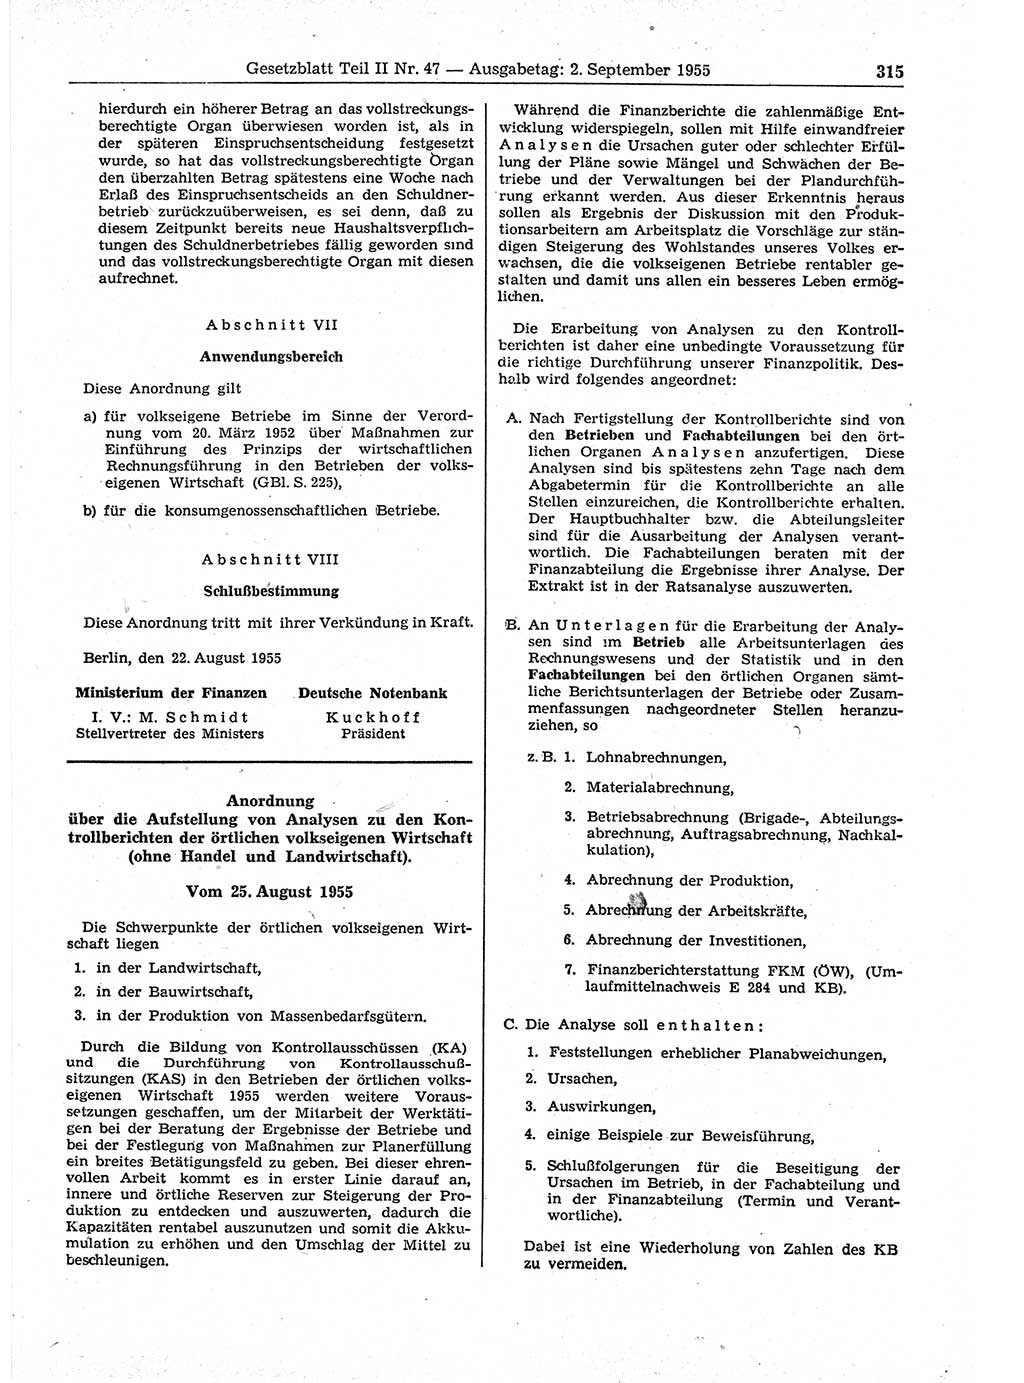 Gesetzblatt (GBl.) der Deutschen Demokratischen Republik (DDR) Teil ⅠⅠ 1955, Seite 315 (GBl. DDR ⅠⅠ 1955, S. 315)